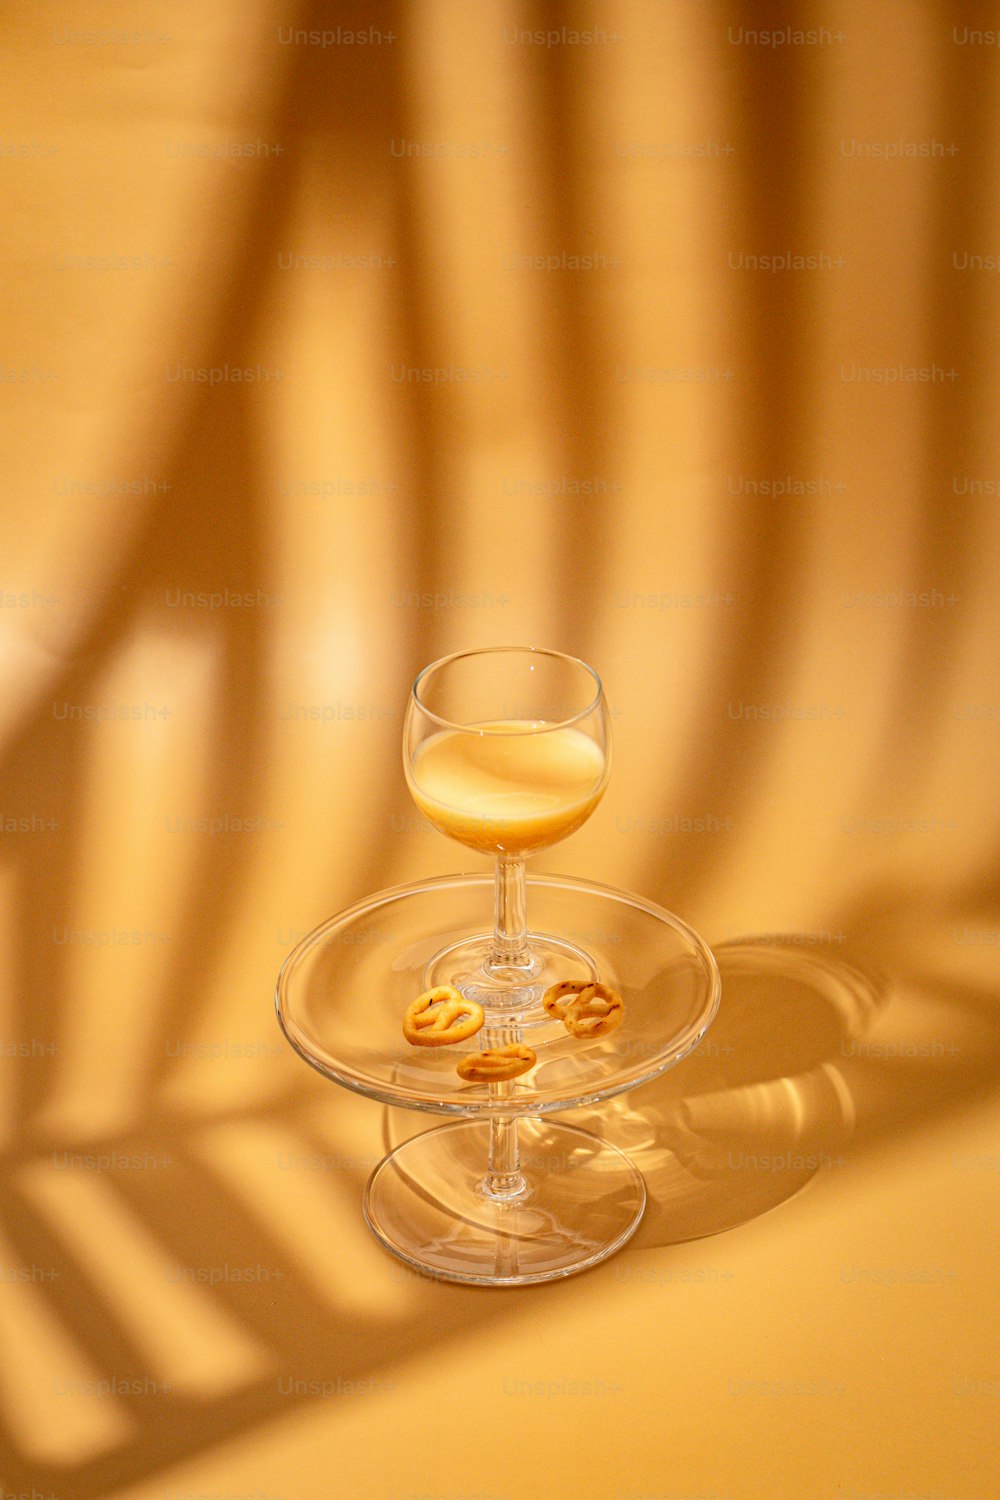 테이블 위에 앉아 있는 와인 한 잔